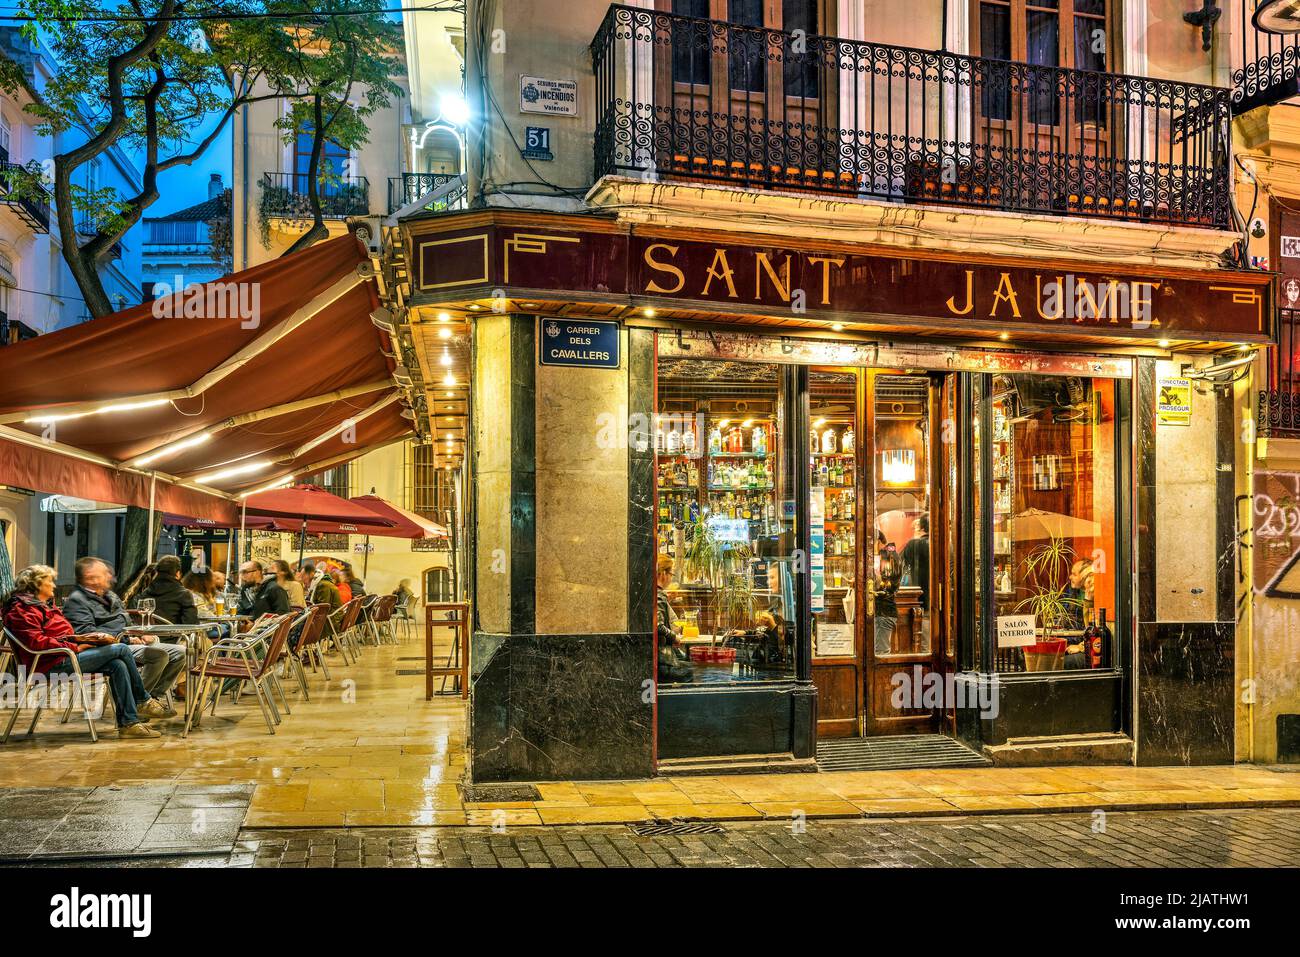 Cafe Sant Jaume, quartier El Carmen, Valence, Communauté Valencienne, Espagne Banque D'Images